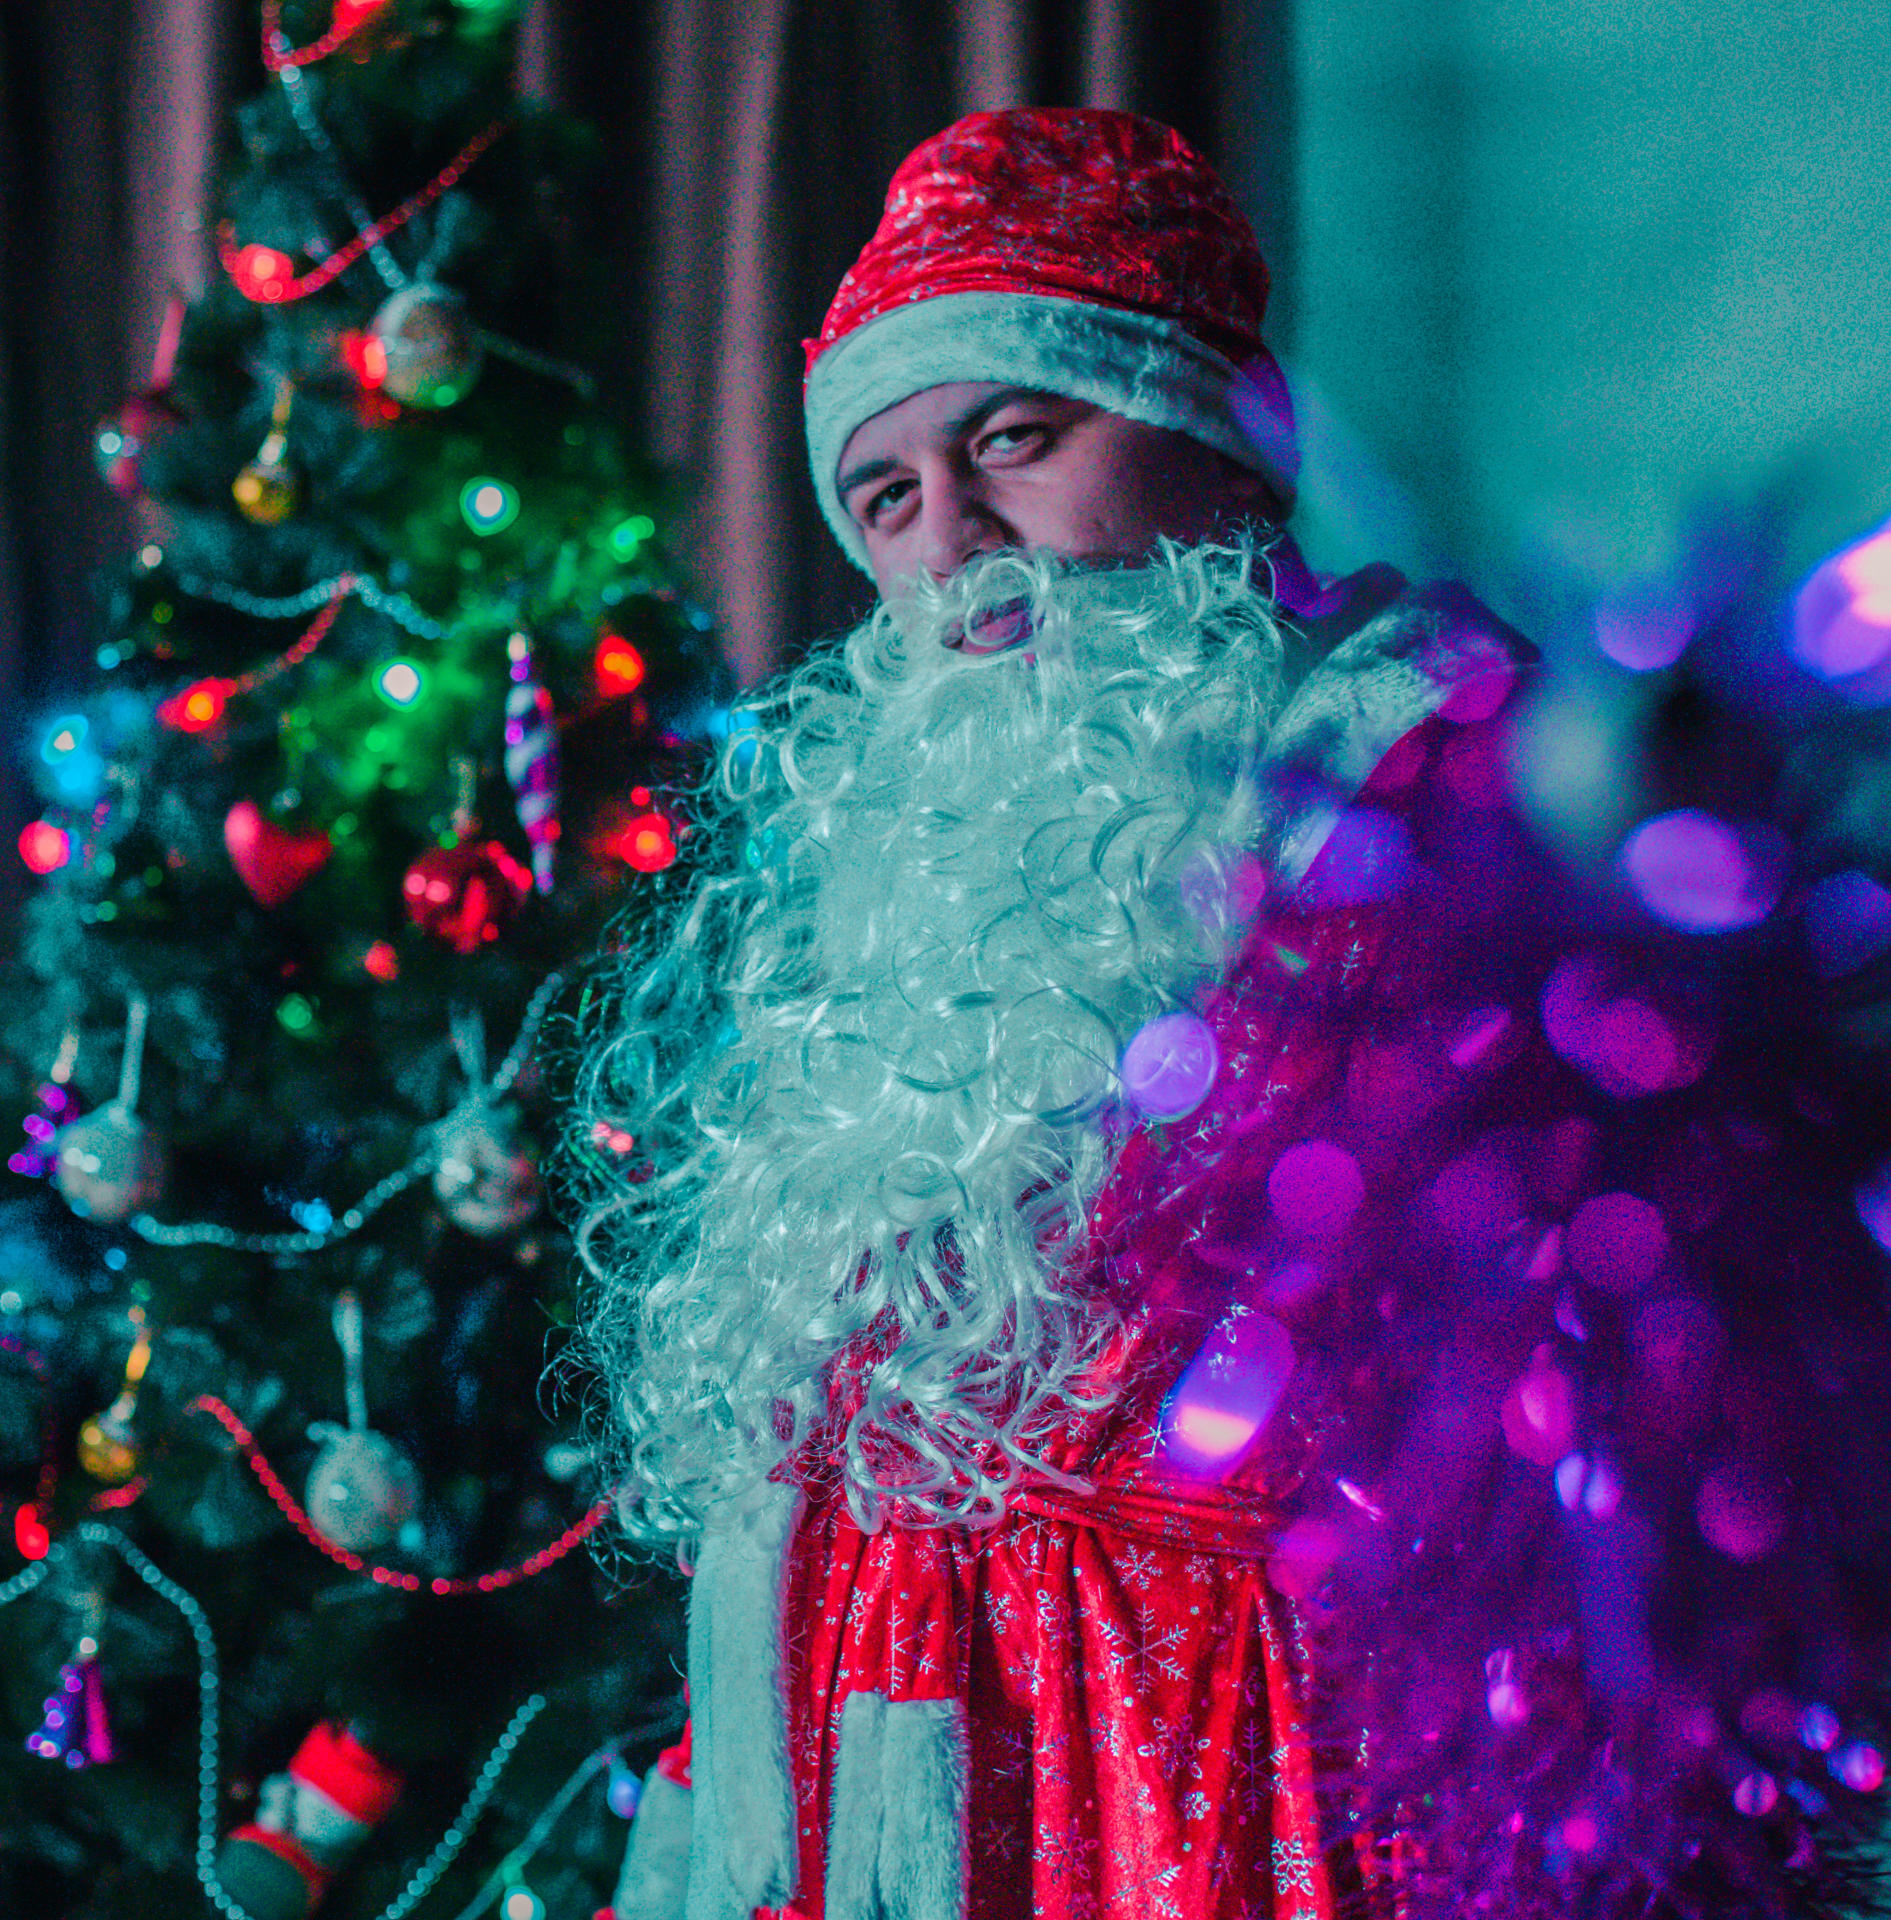 В Баку появился новогодний Ёжик – Дед Мороз и Снегурочка отдыхают (ВИДЕО, ФОТО)